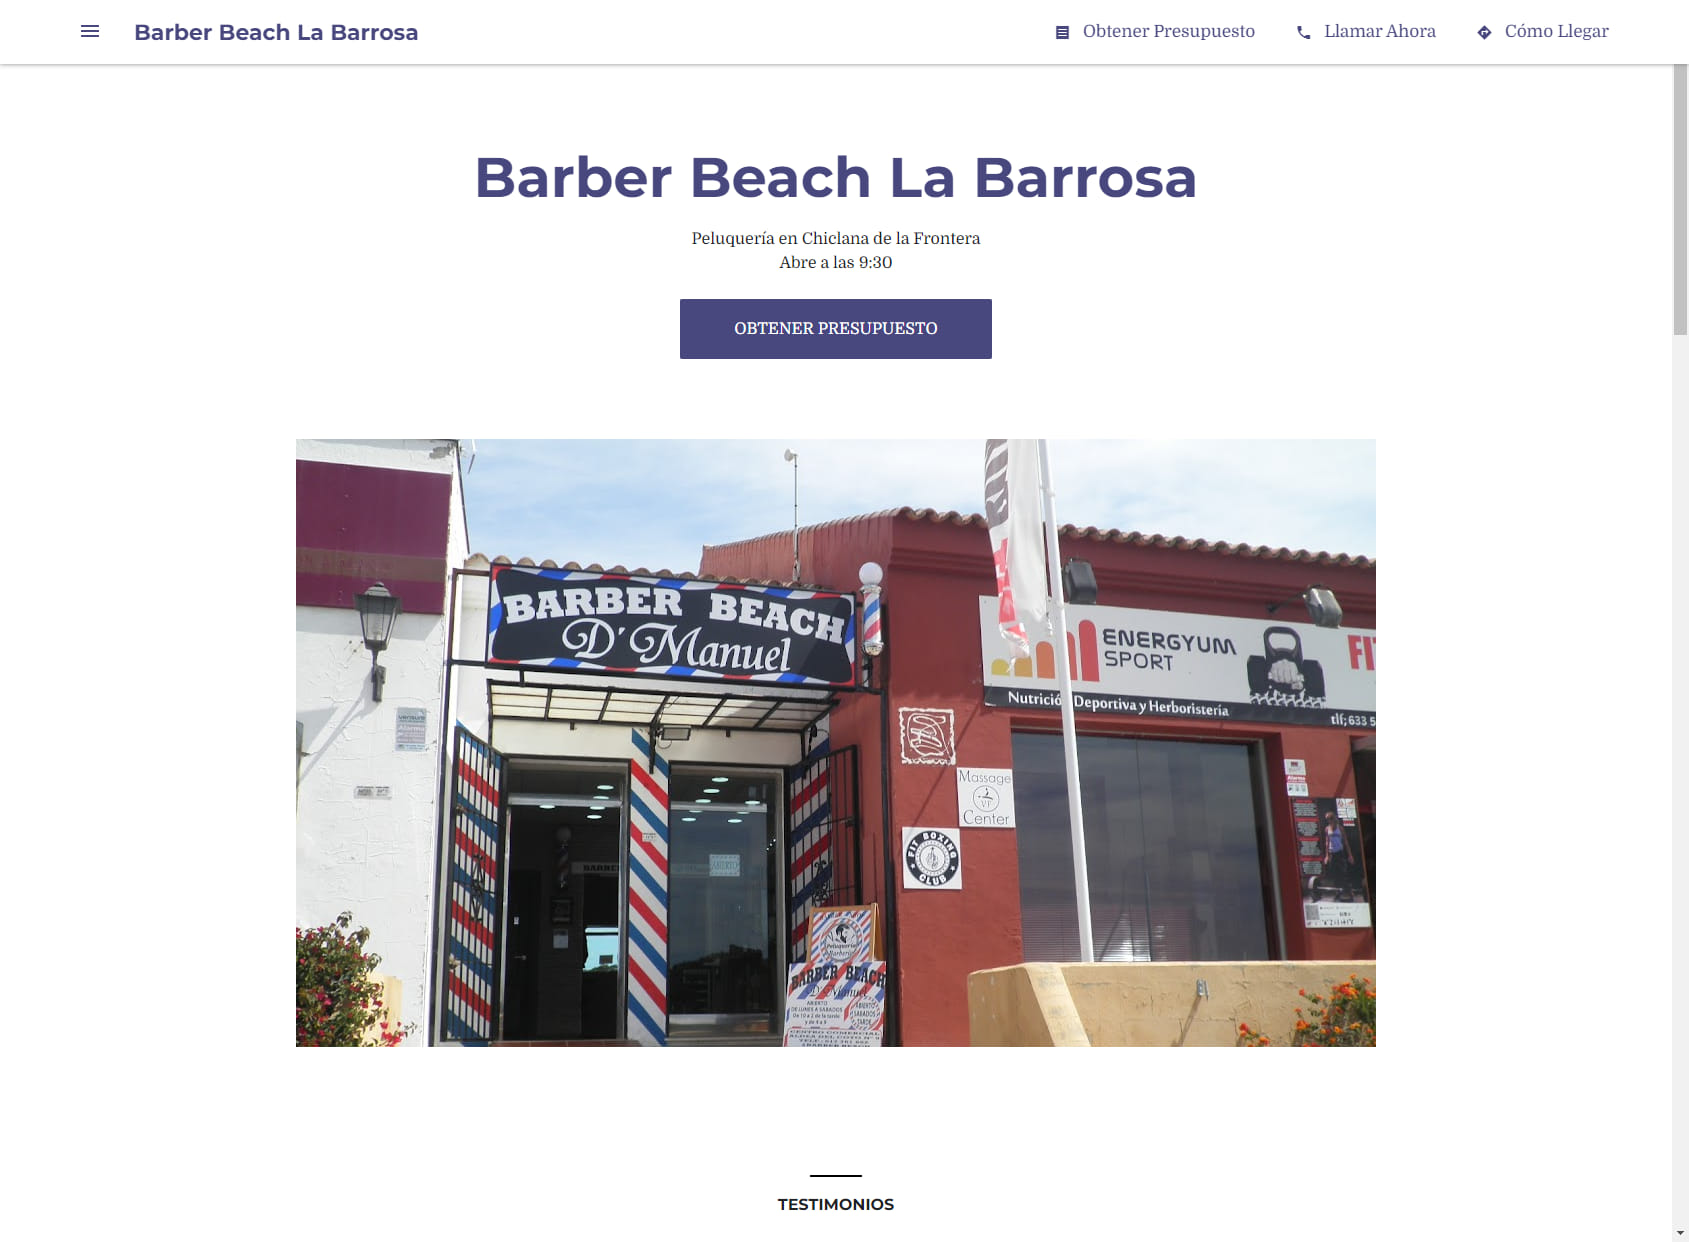 Barber Beach La Barrosa